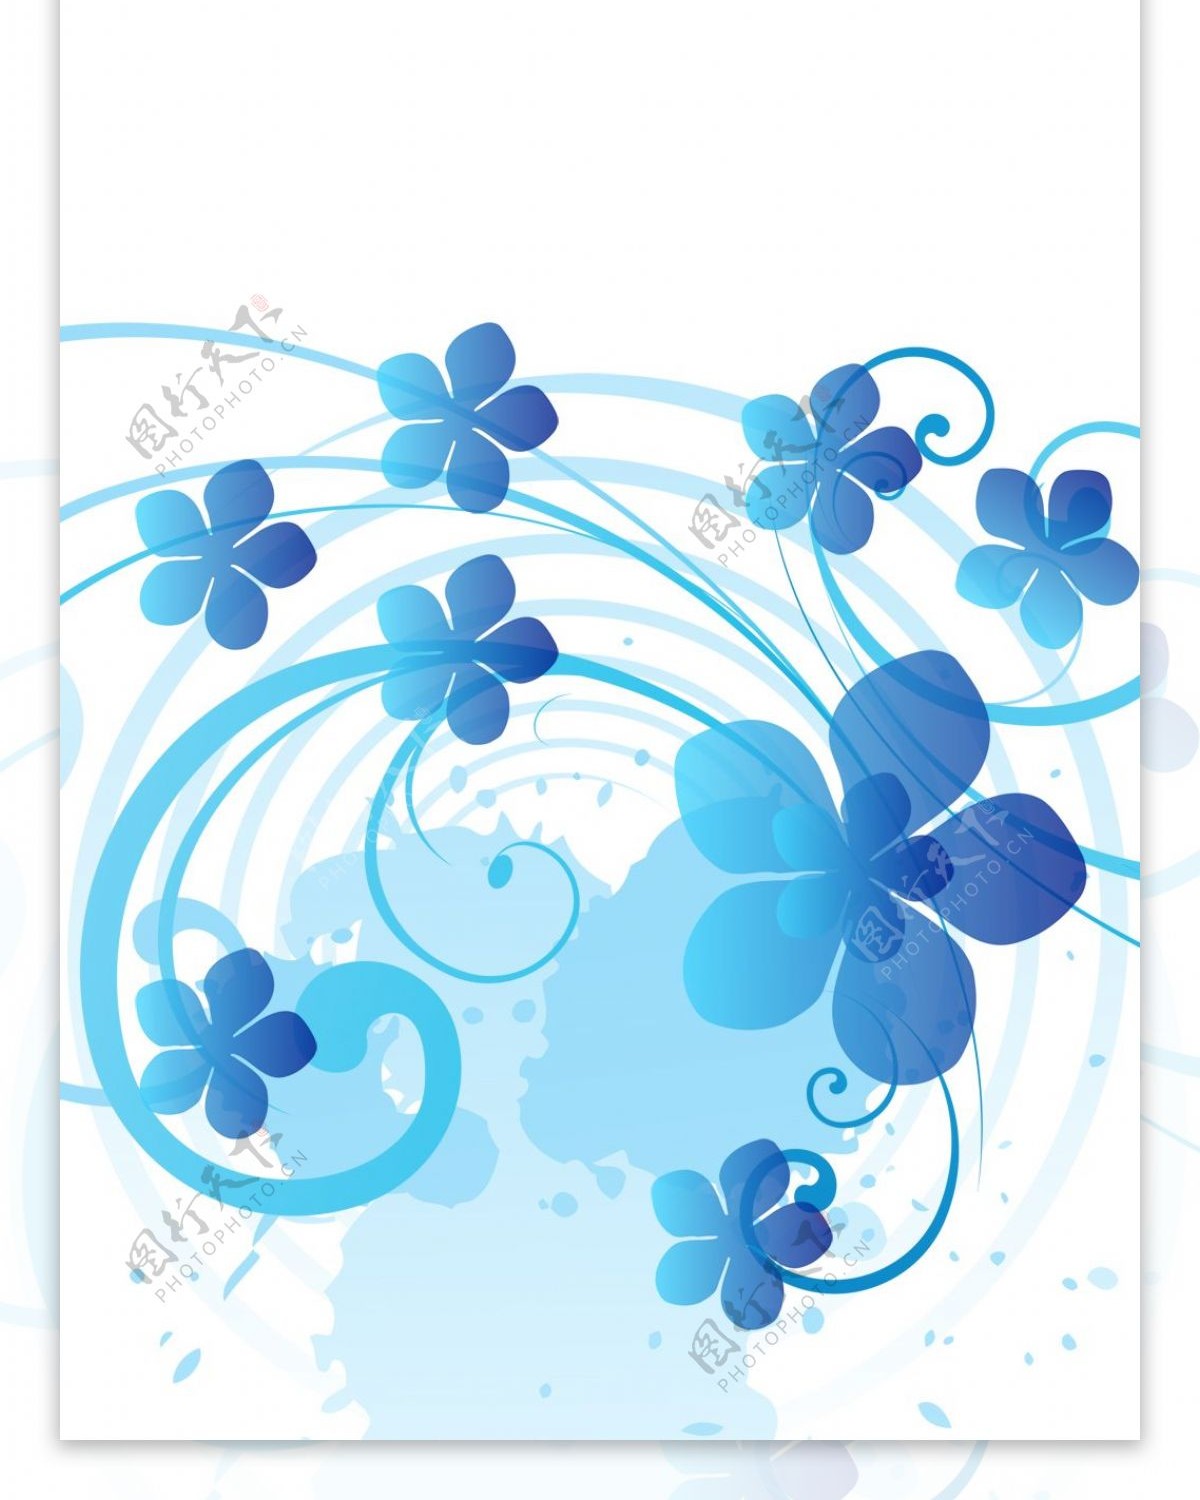 精美蓝色花纹展架模板素材画面